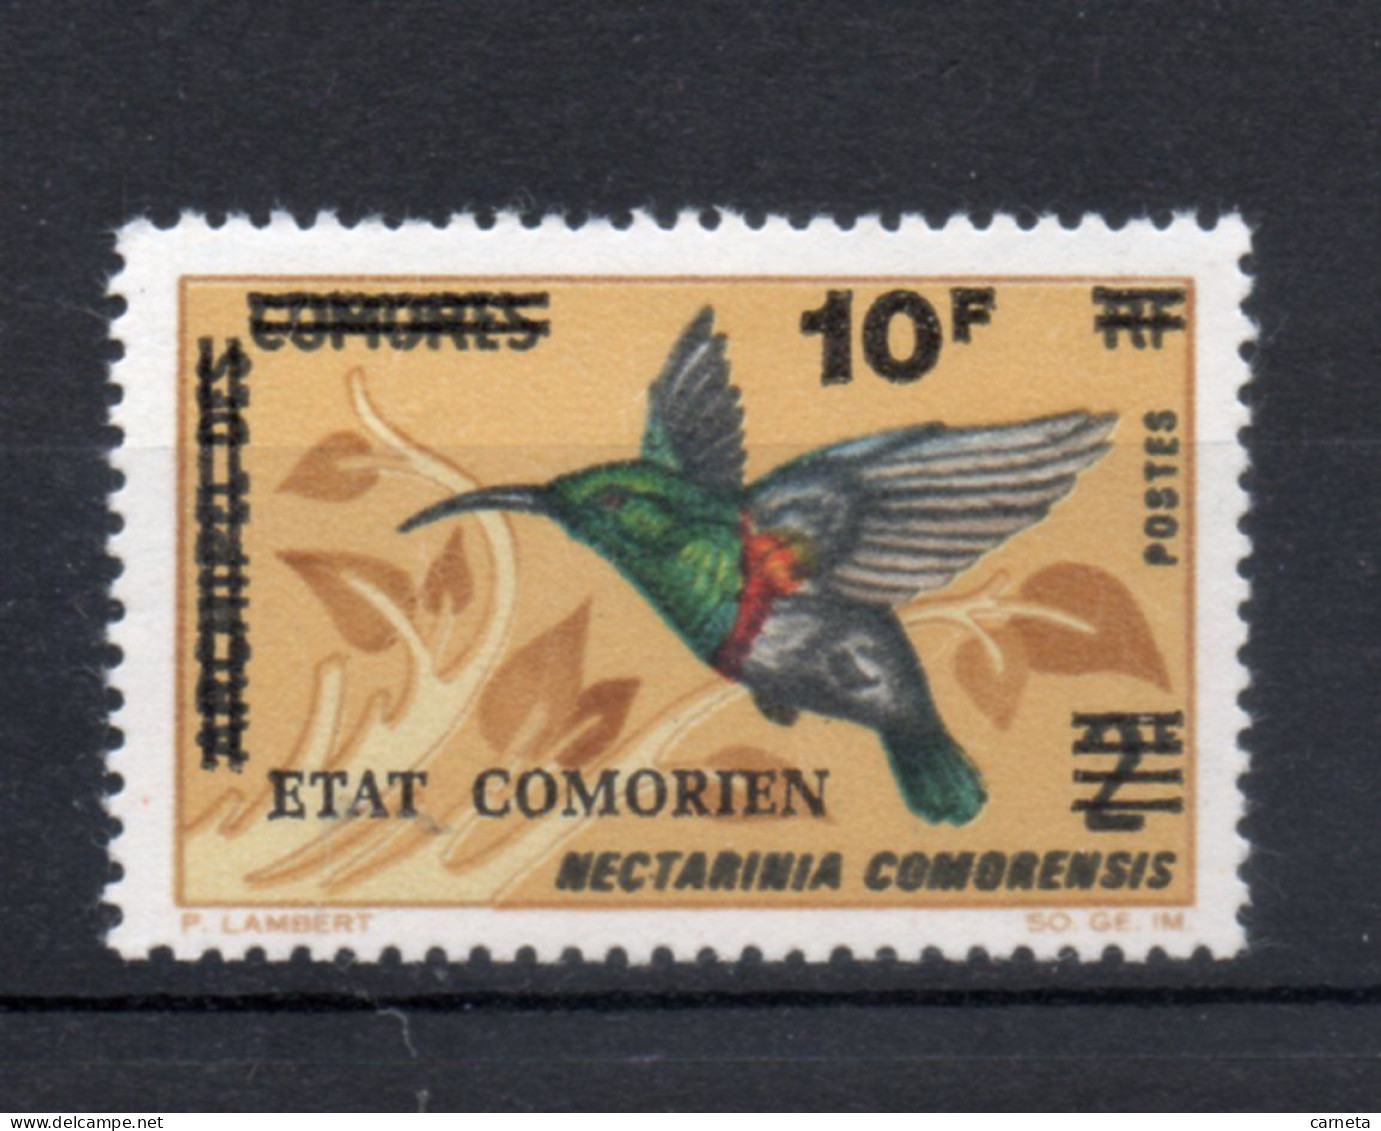 COMORES  N° 107   NEUF SANS CHARNIERE COTE 1.00€  OISEAUX ANIMAUX  SURCHARGE  VOIR DESCRIPTION - Comores (1975-...)